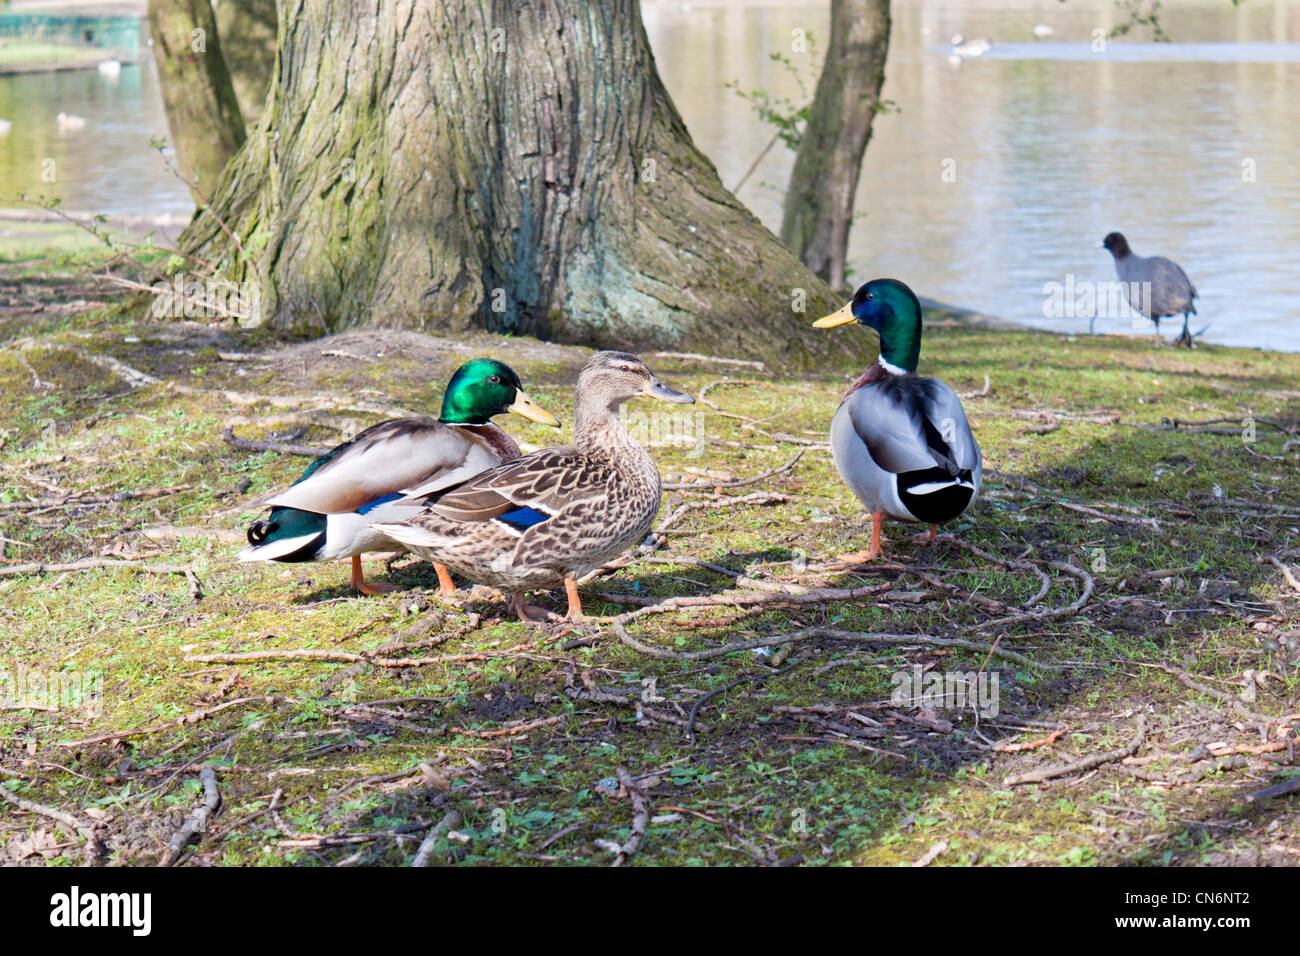 Ducks in Hanley park Stoke on Trent Stock Photo